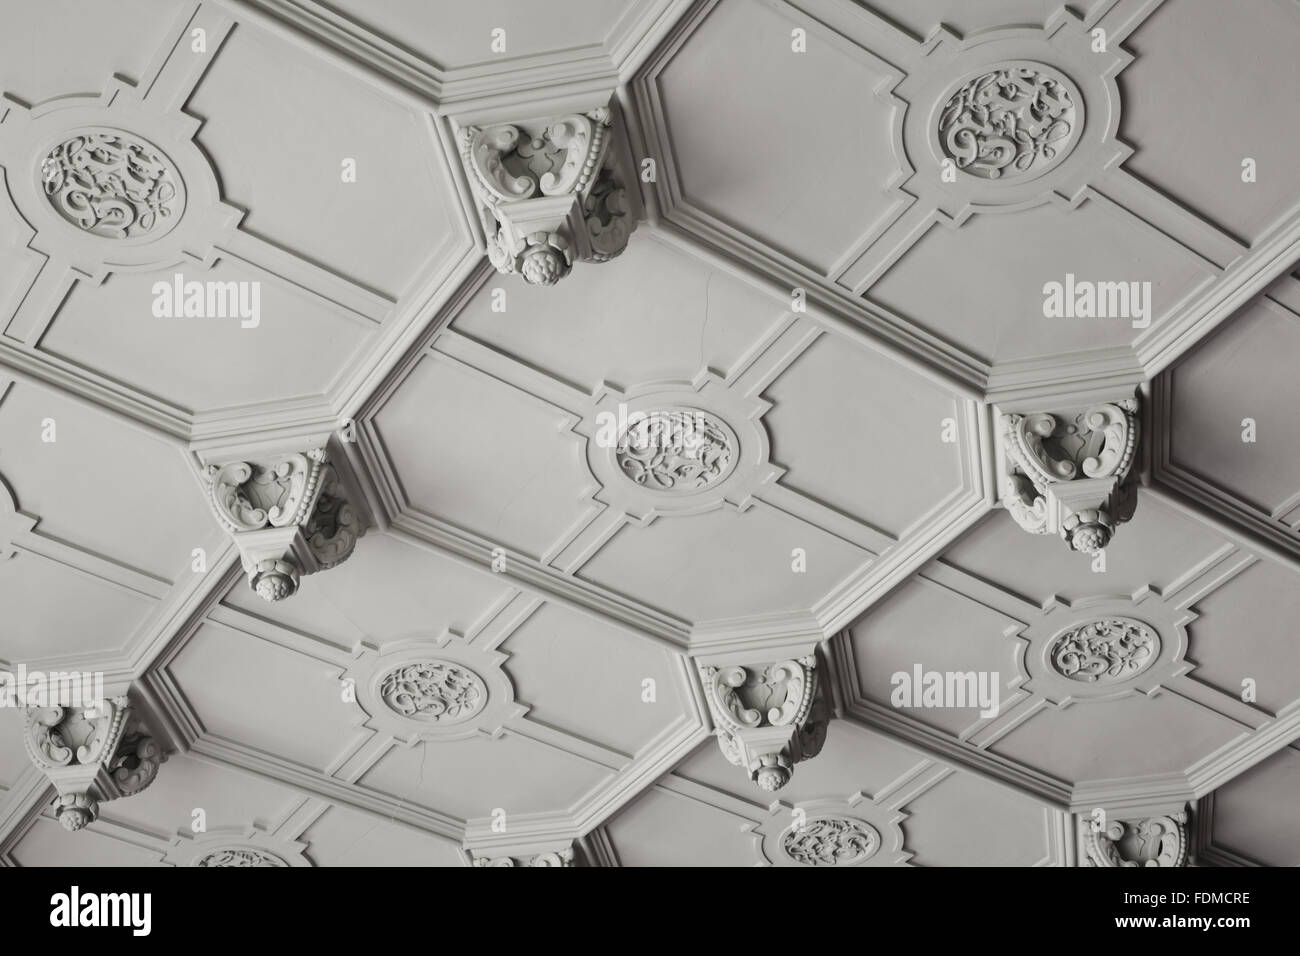 Détail d'une partie de la plafond de plâtre dans la salle à manger de l'hôtel de Gawthorpe, Lancashire. Le plafond a été refait par Sir Charles Barry en 1852 sous forme enrichie à partir de la conception originale de 1605. Banque D'Images